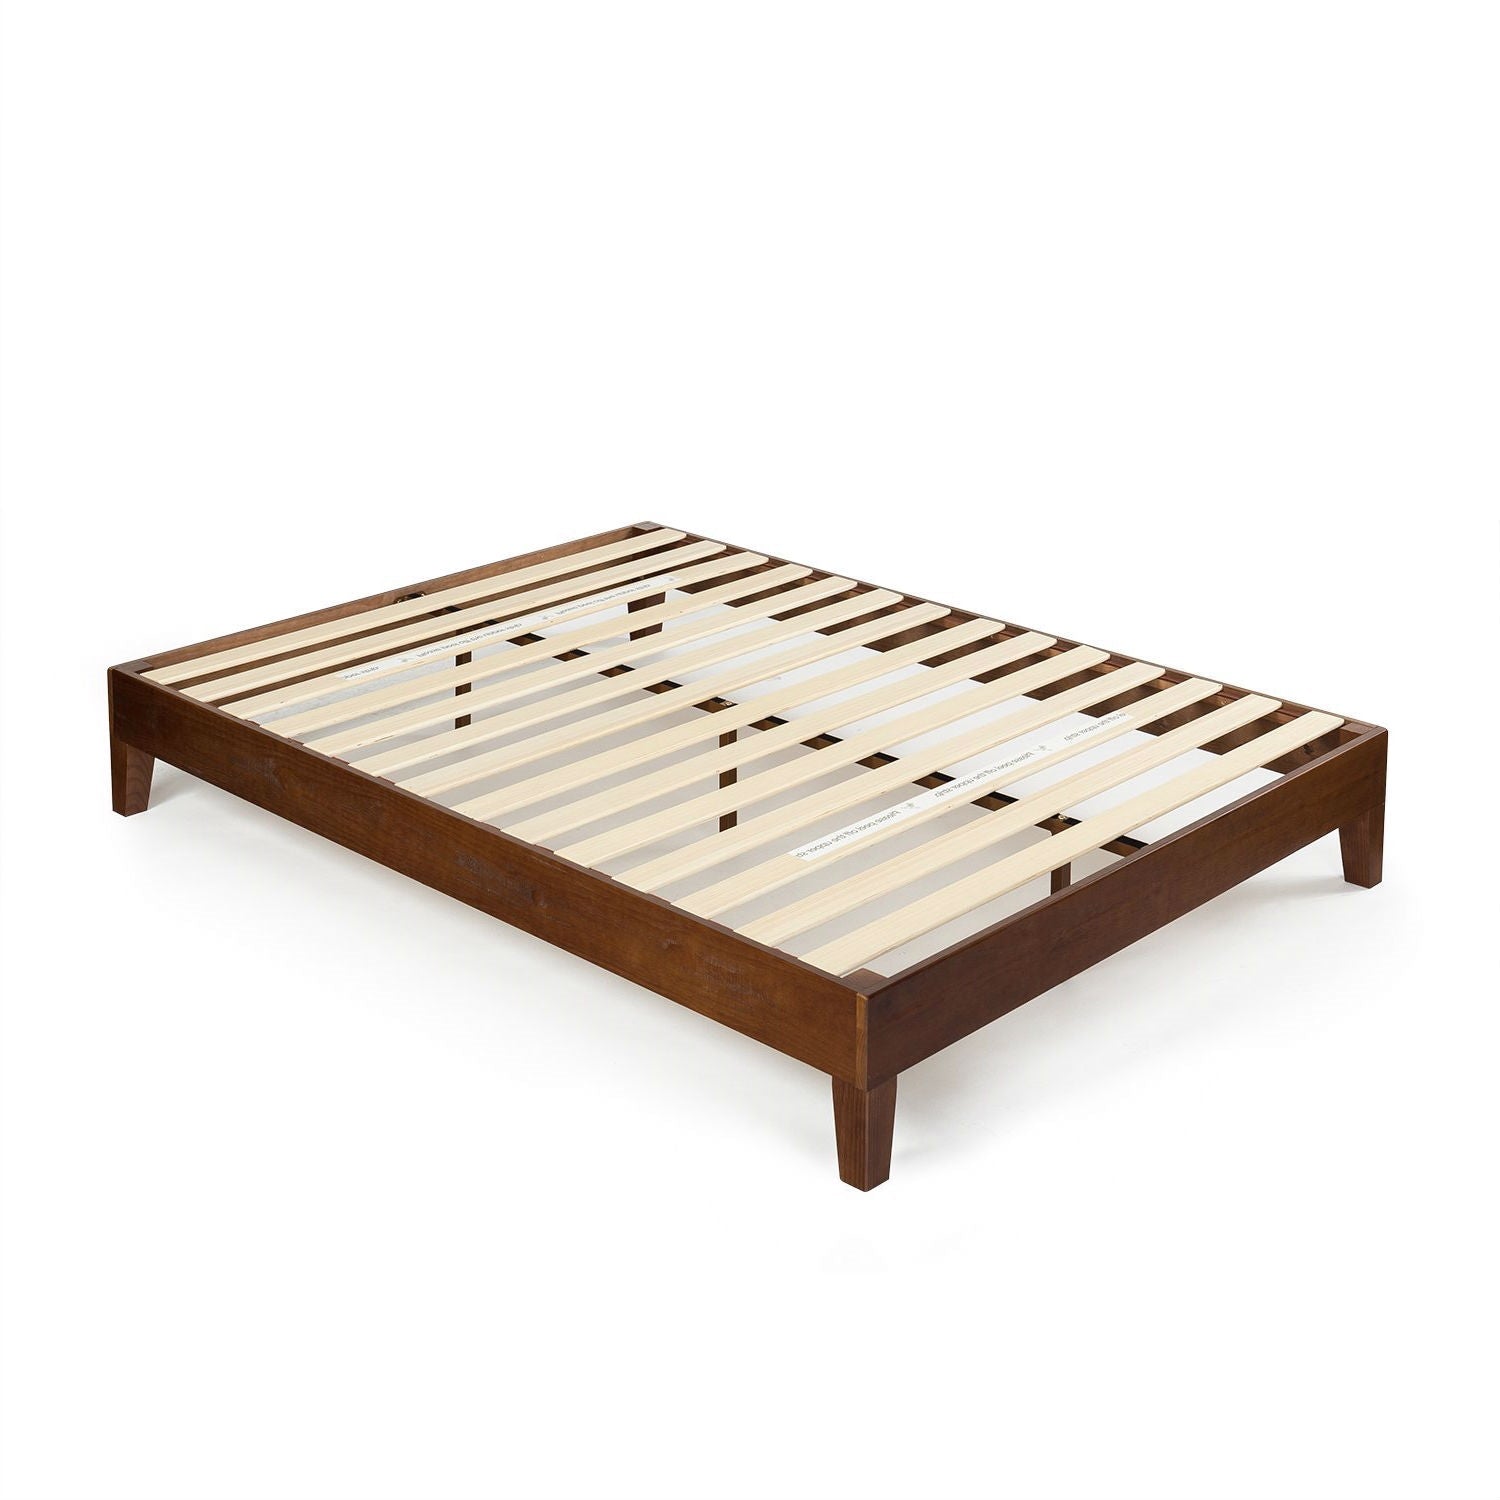 Bedroom > Bed Frames > Platform Beds - King Size Low Profile Solid Wood Platform Bed Frame In Espresso Finish